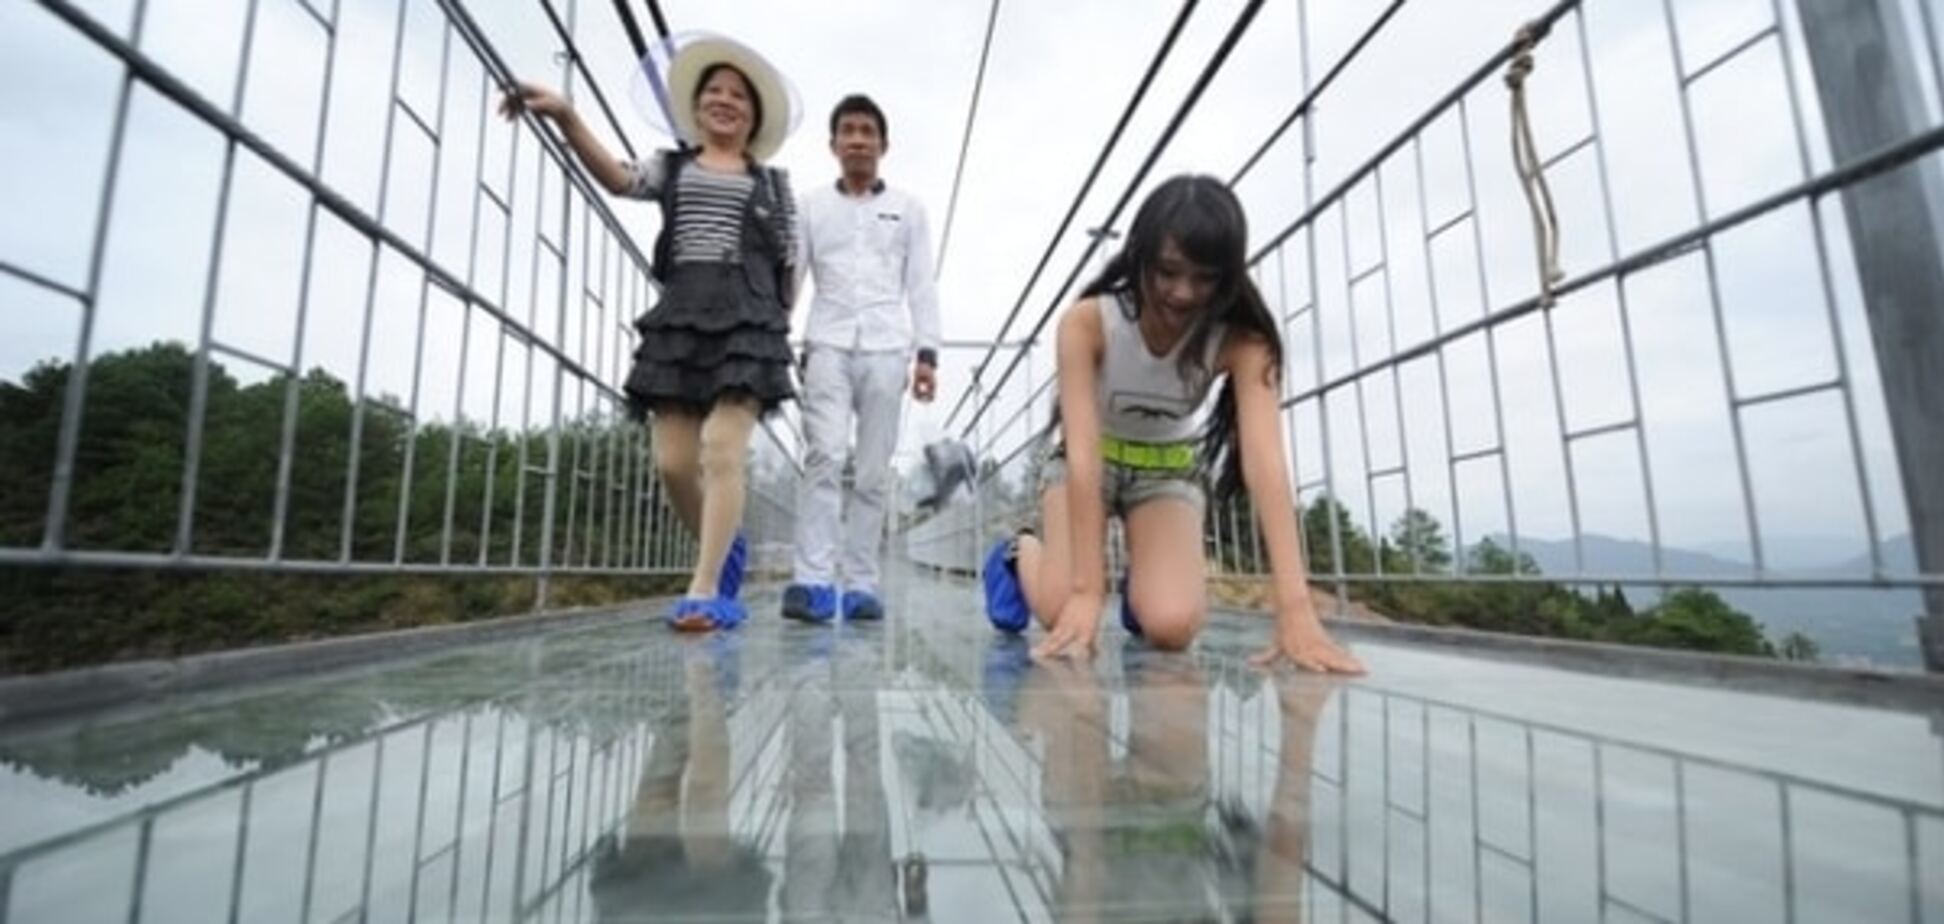 Слабо? Туристы пришли в ужас от стеклянного моста в Китае